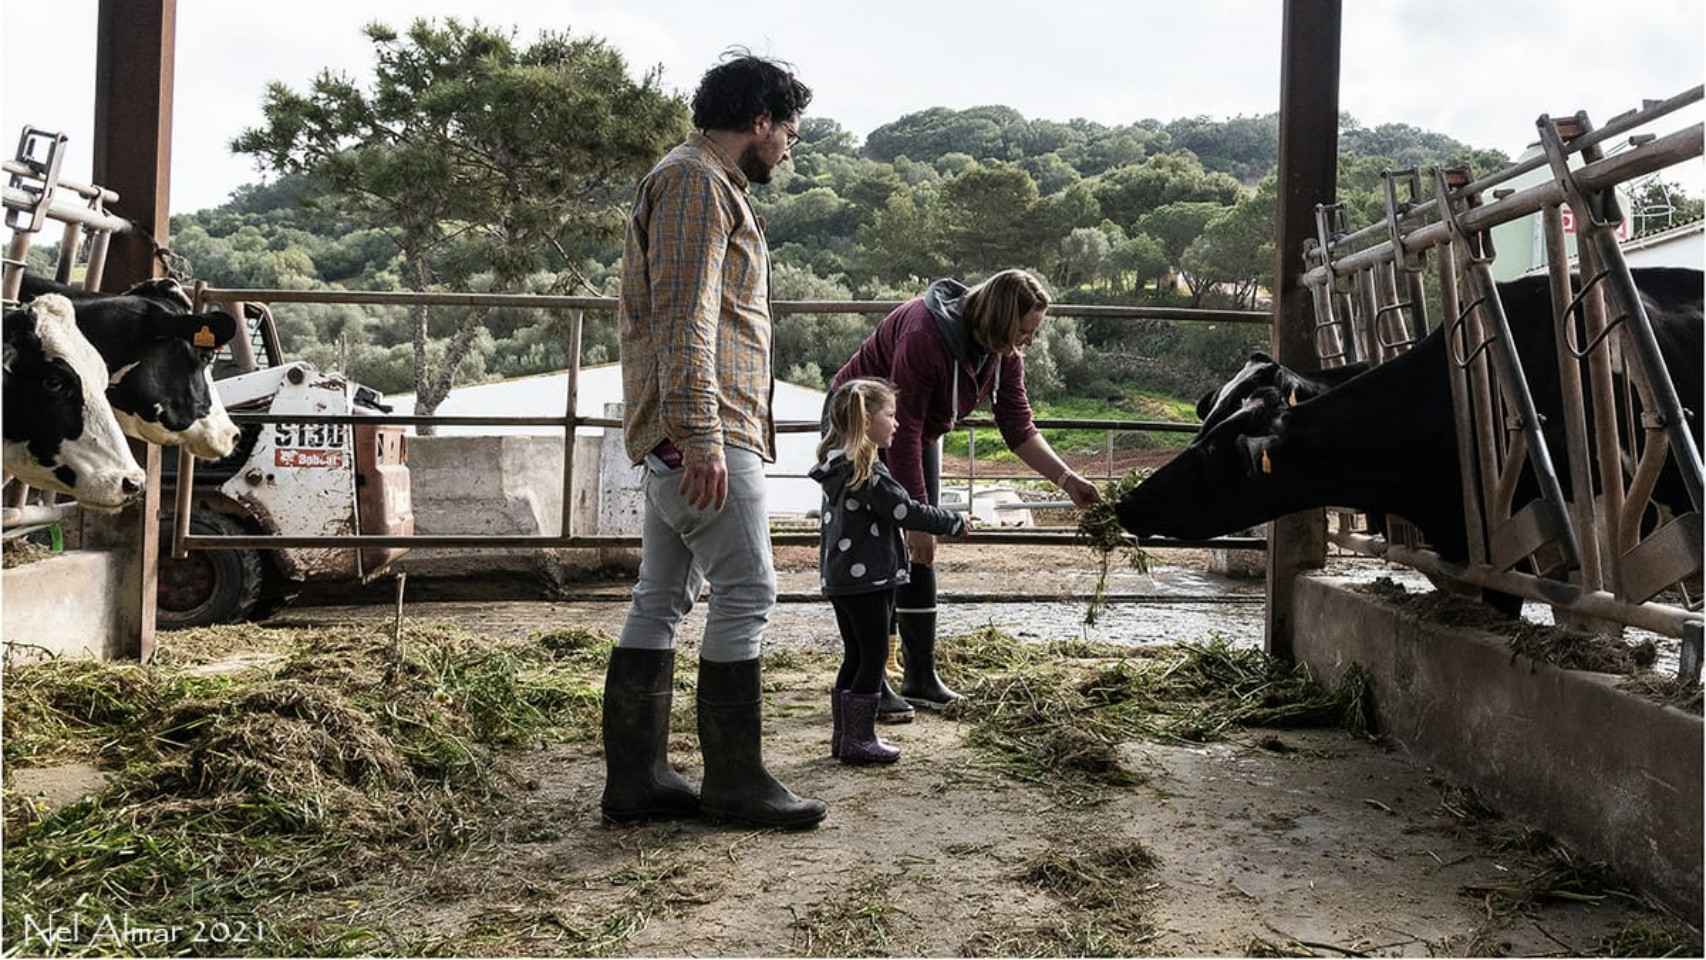 Una familia visita la quesería Formatges Sa Roqueta